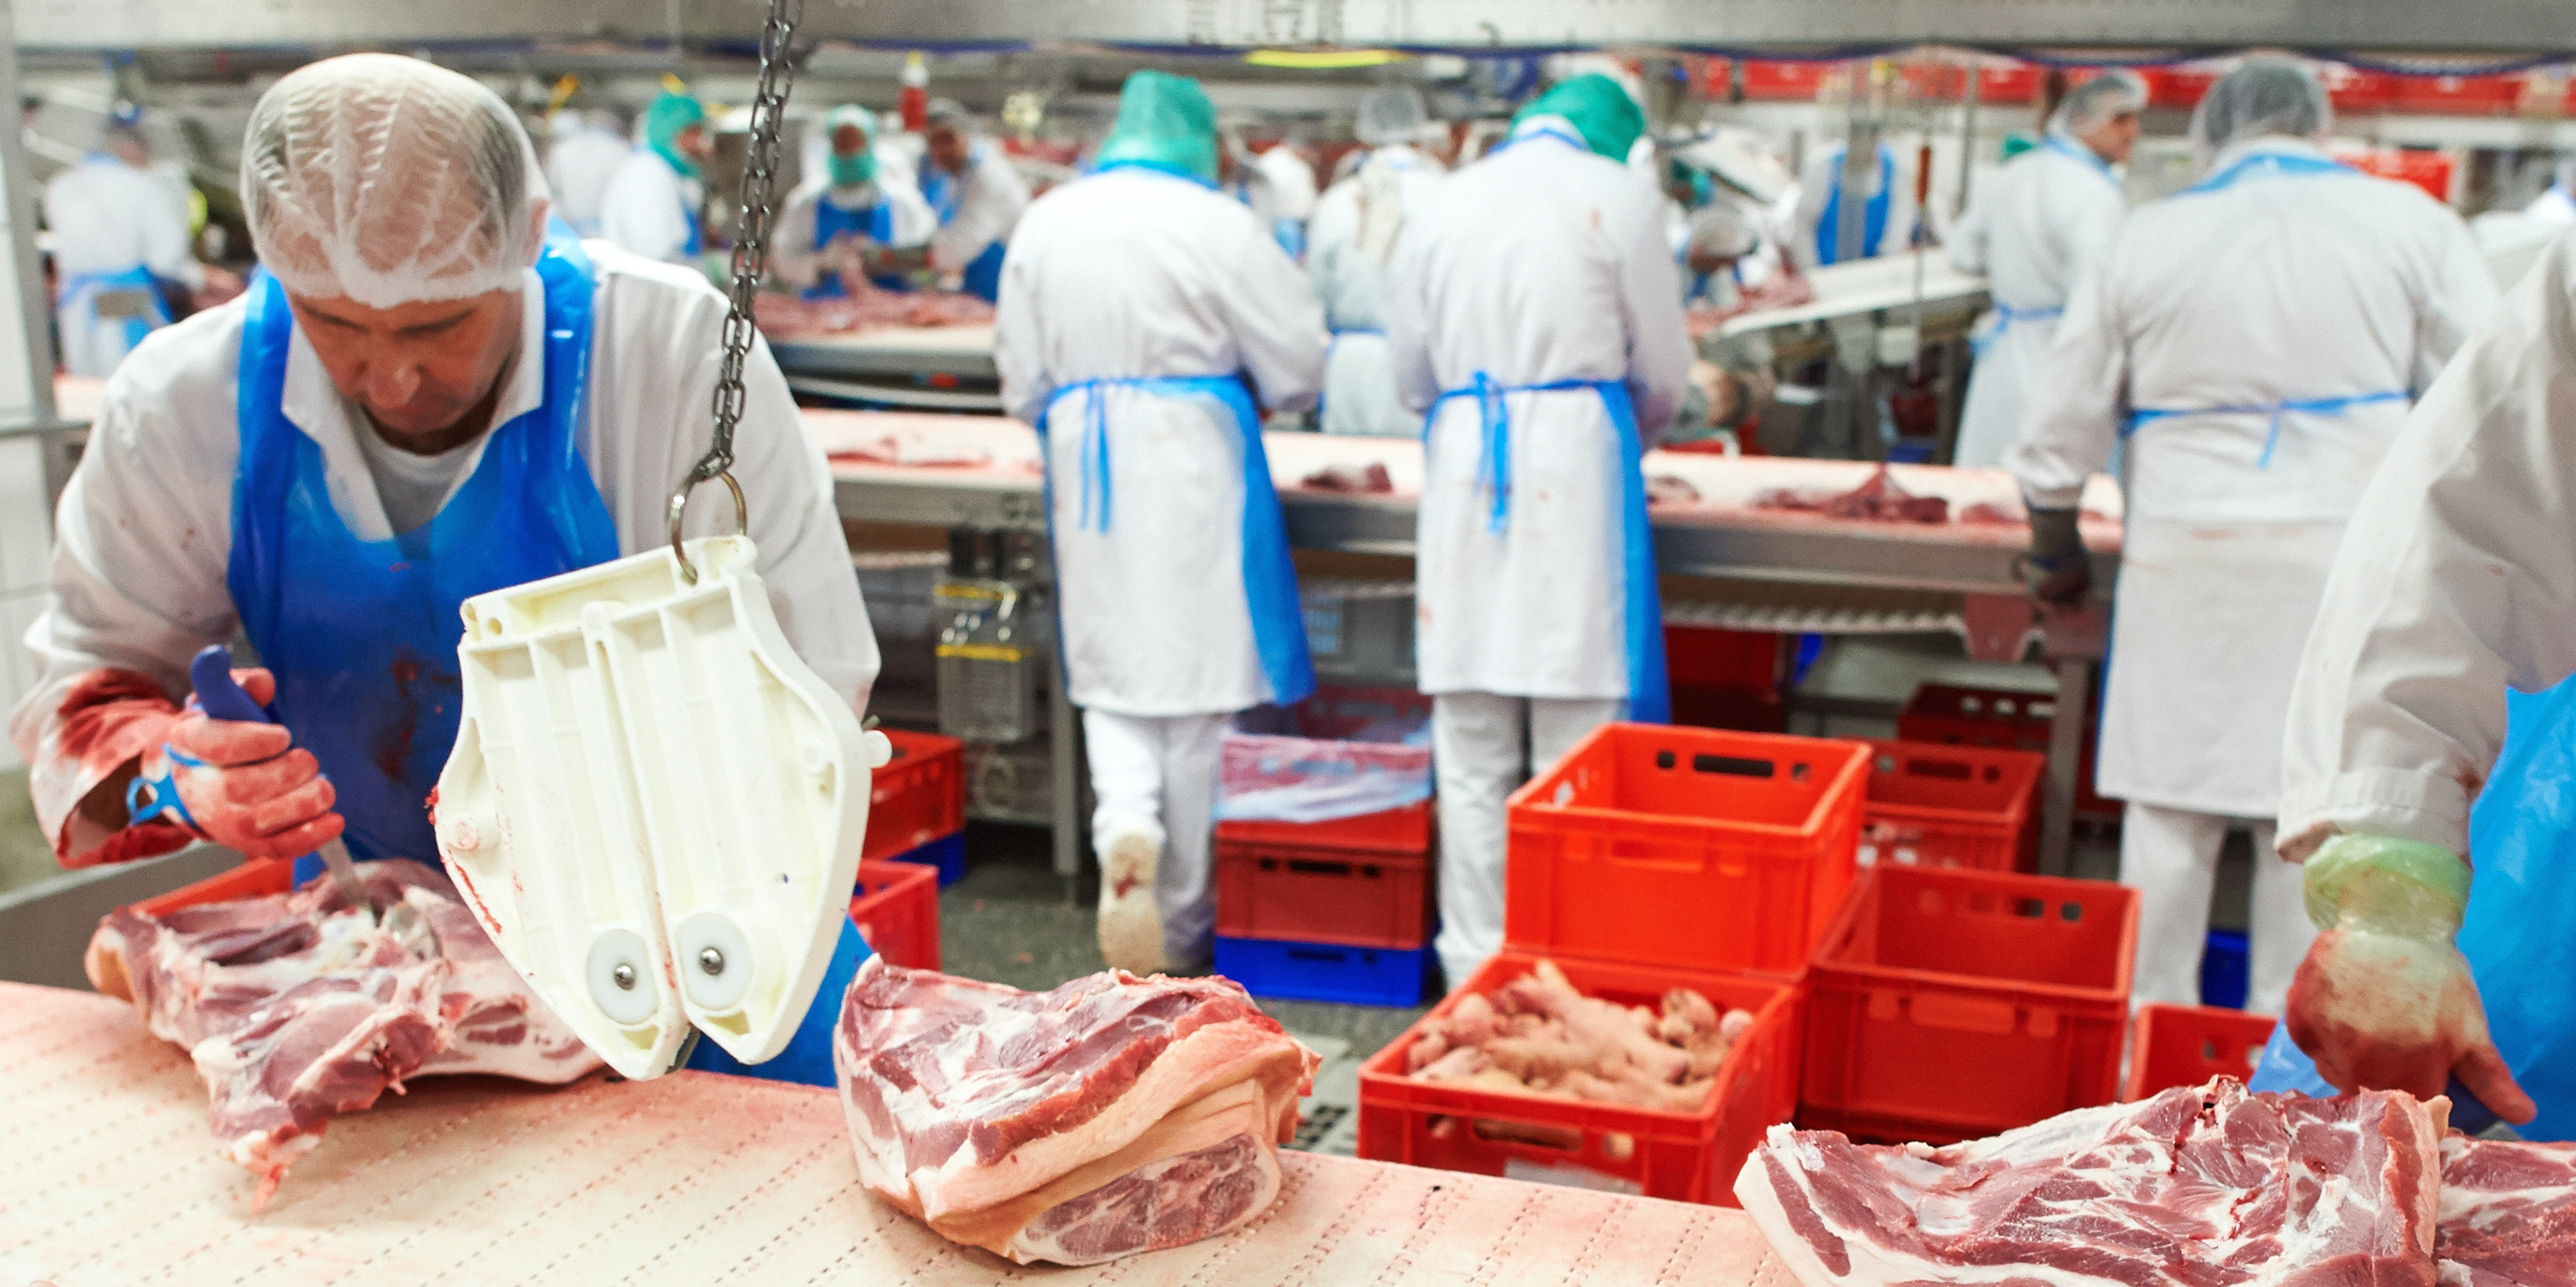 Foto: Mitarbeiter des Fleischunternehmens Tönnies arbeiten an einem Fliesband.